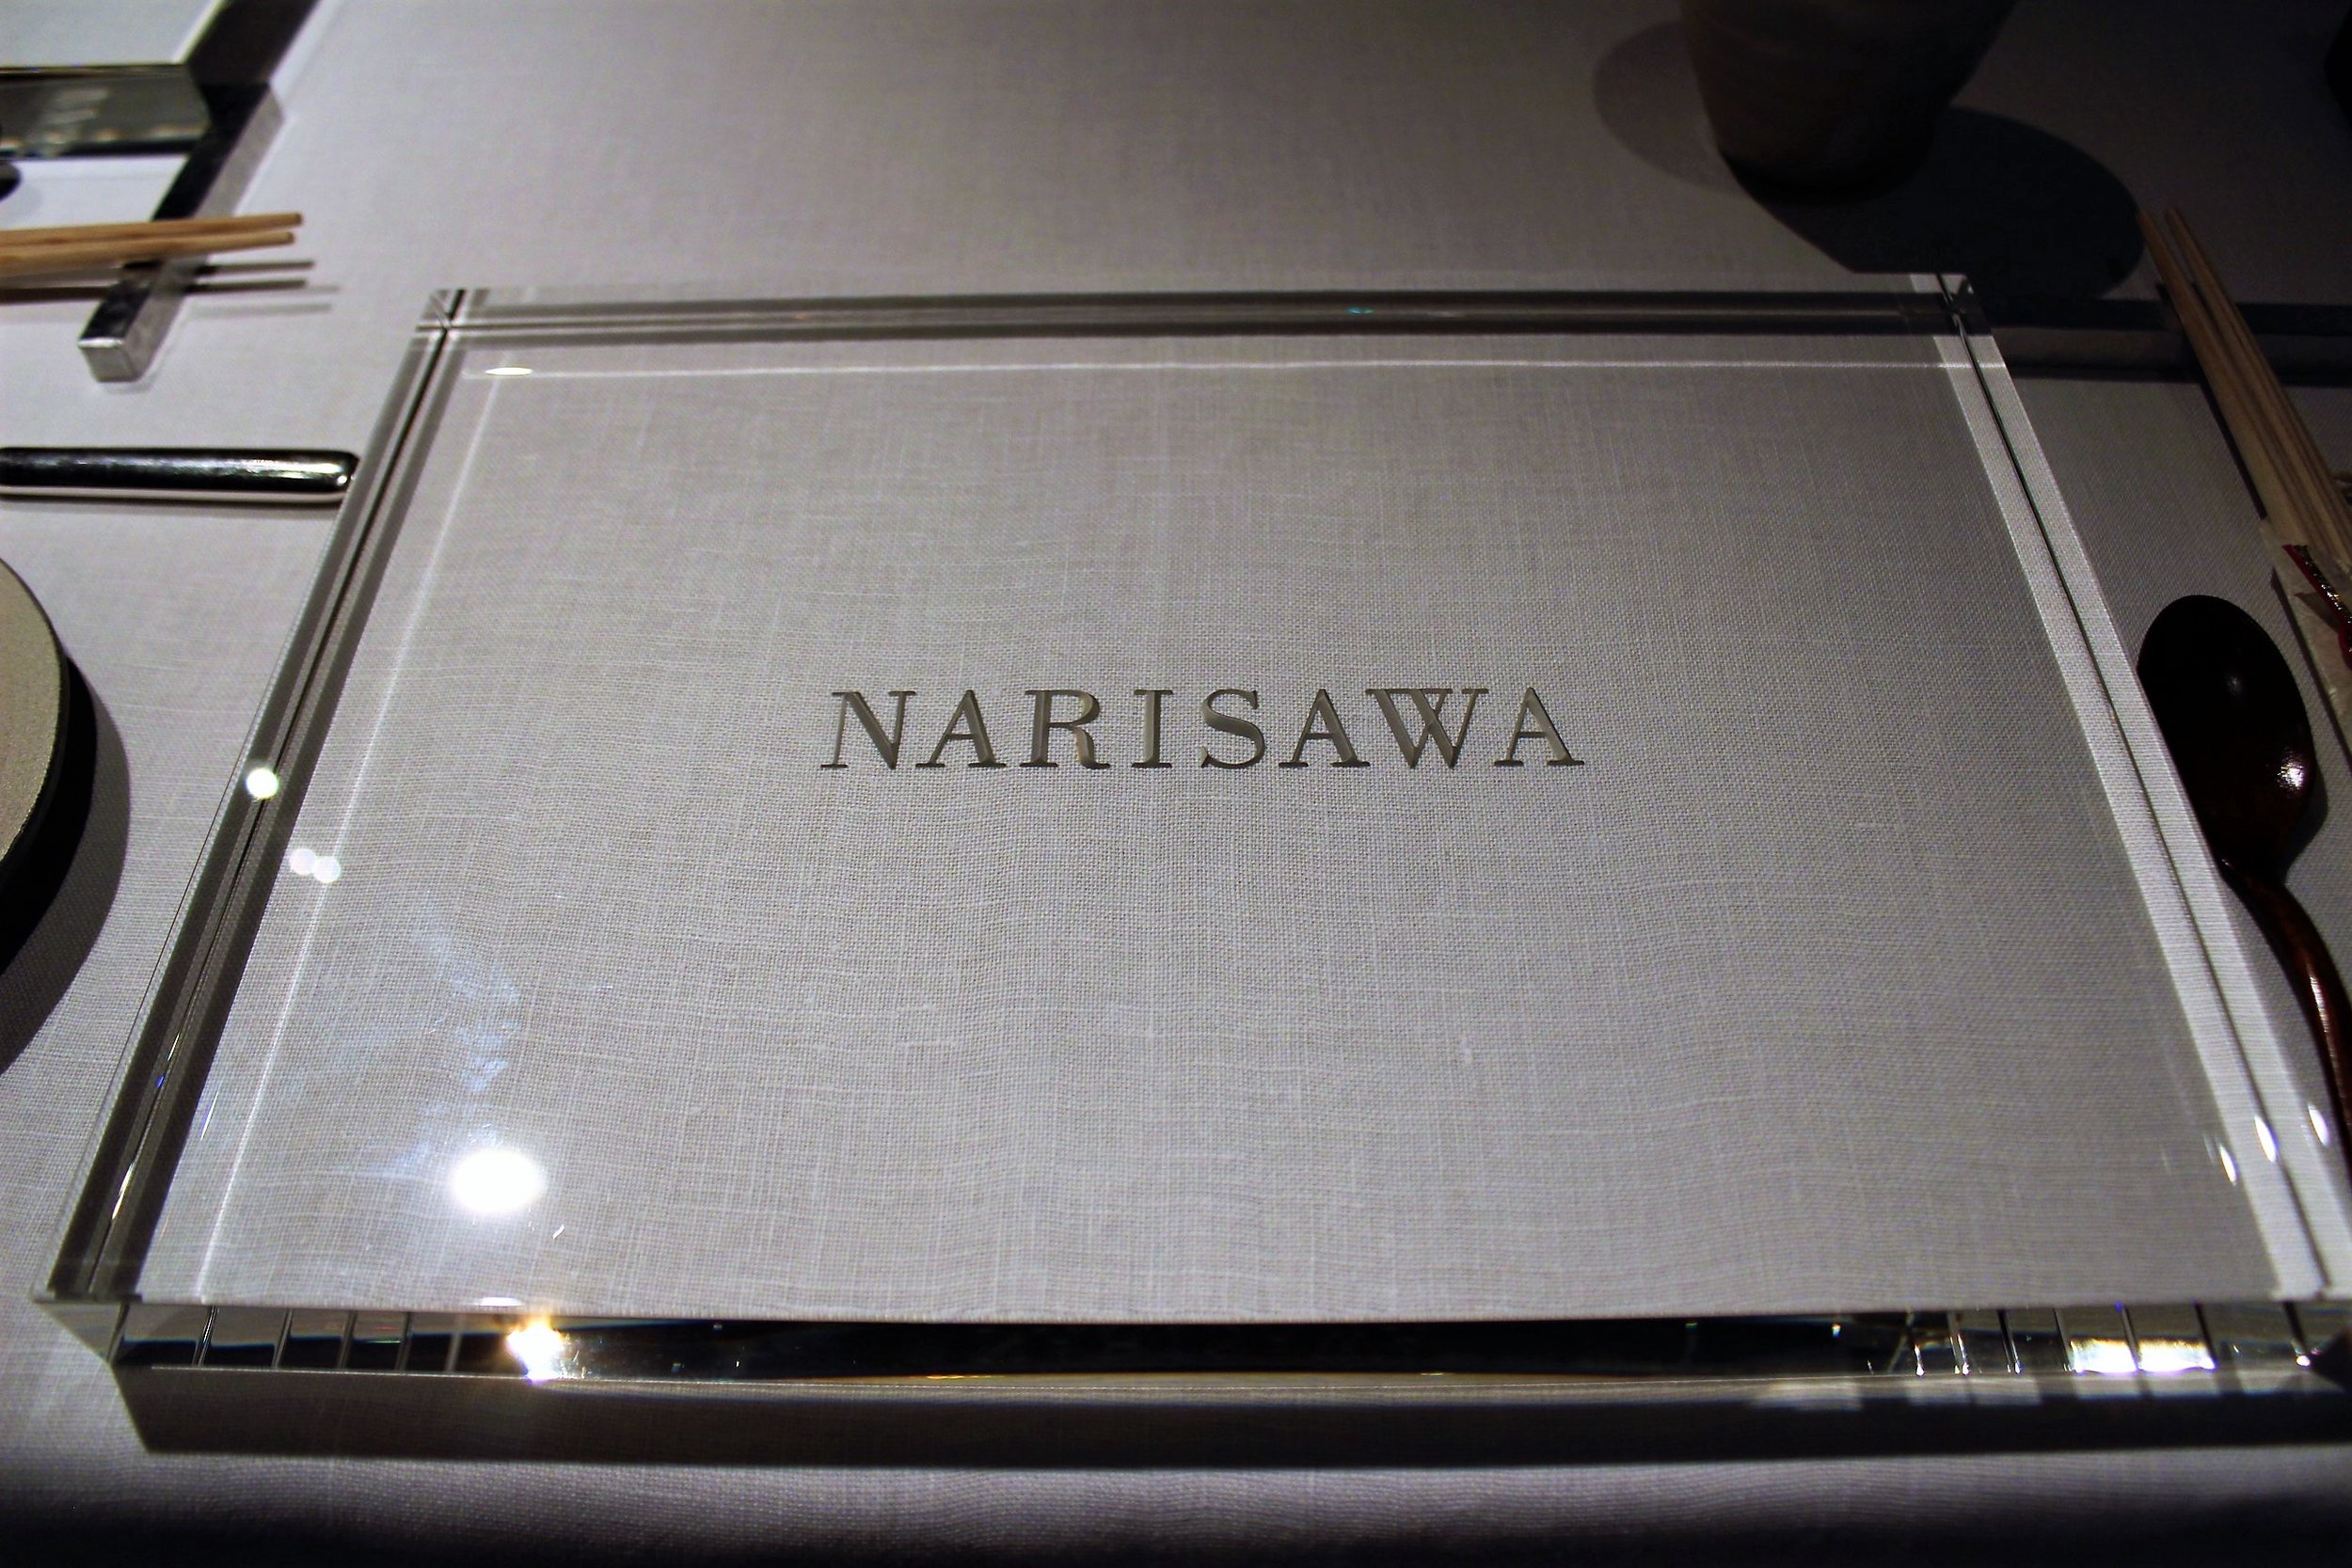 Narisawa in Tokyo, Japan